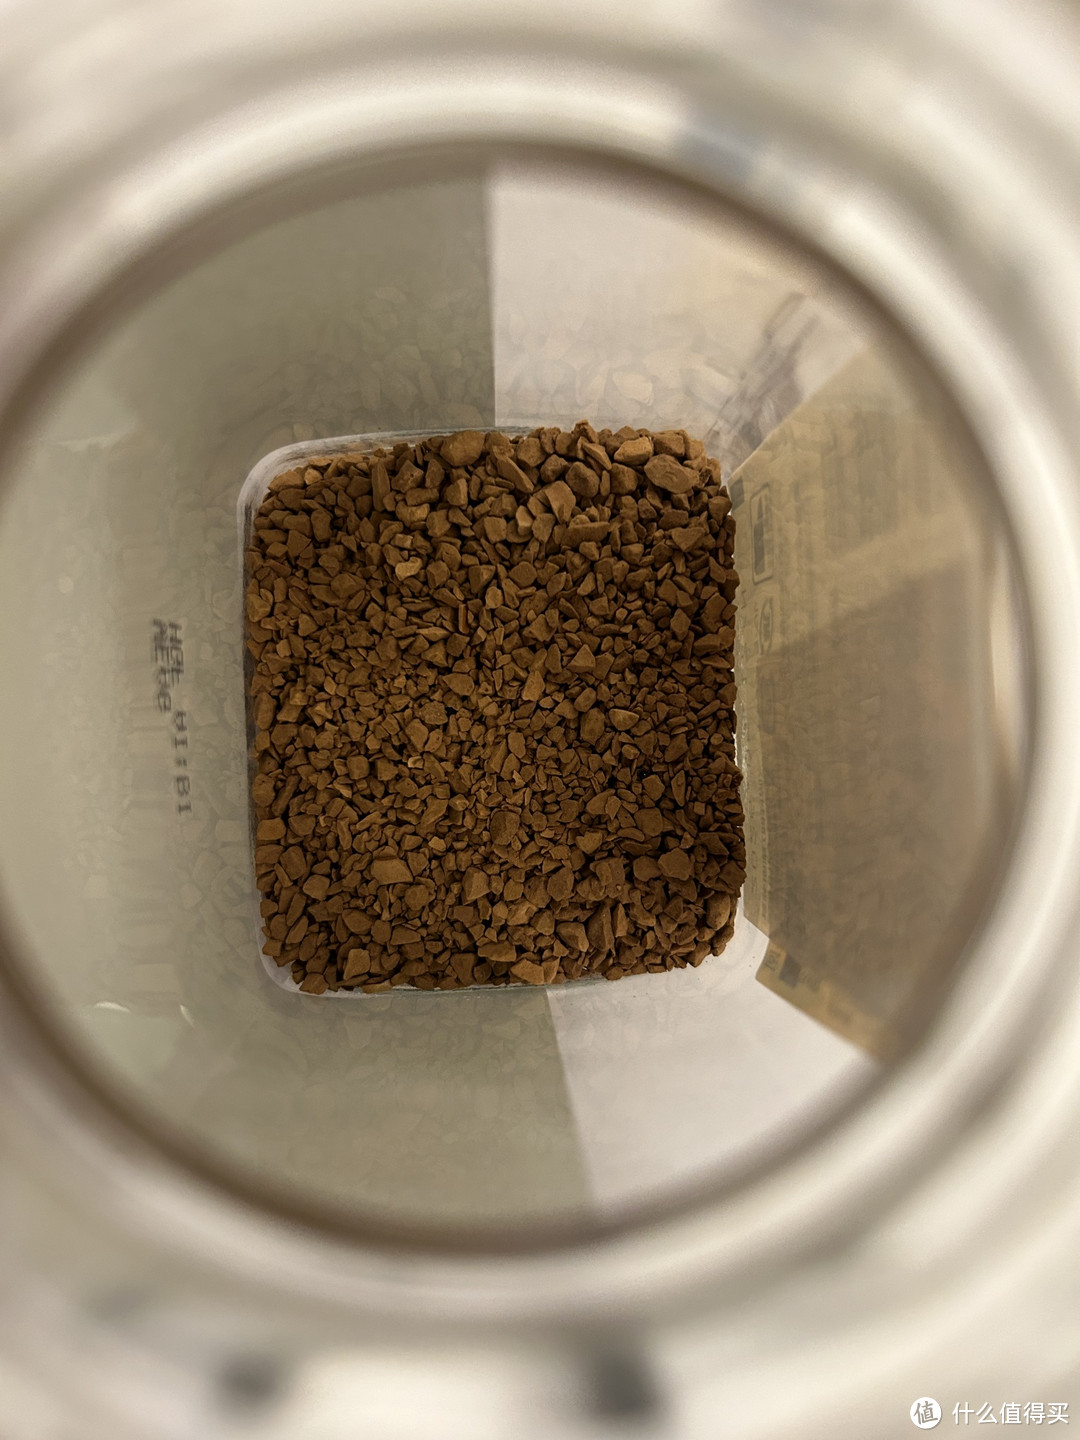 UCC117 速溶咖啡粉，一杯香醇的咖啡时光